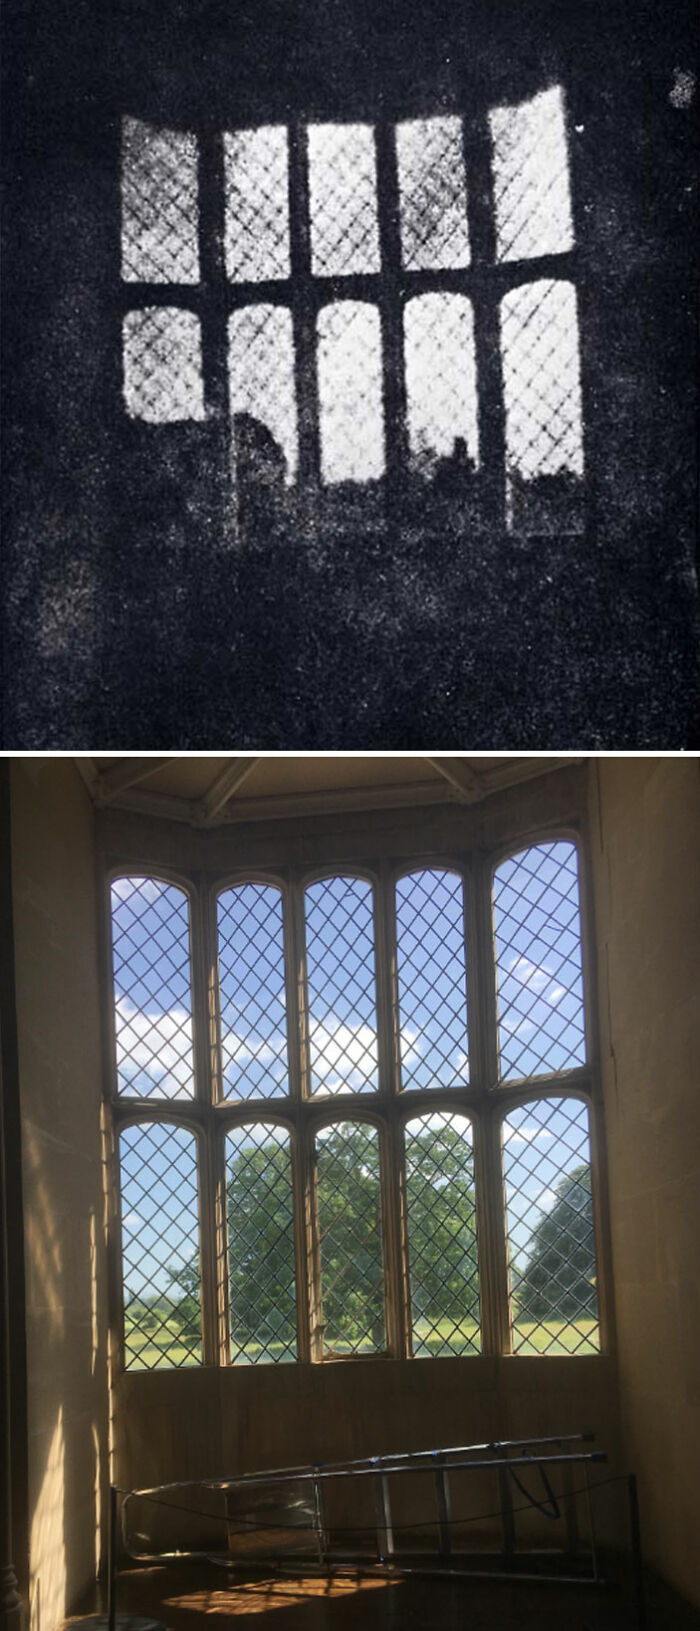 El negativo de una cámara más antiguo que existe, Abadía Lacock en Inglaterra, 1835 y 2022